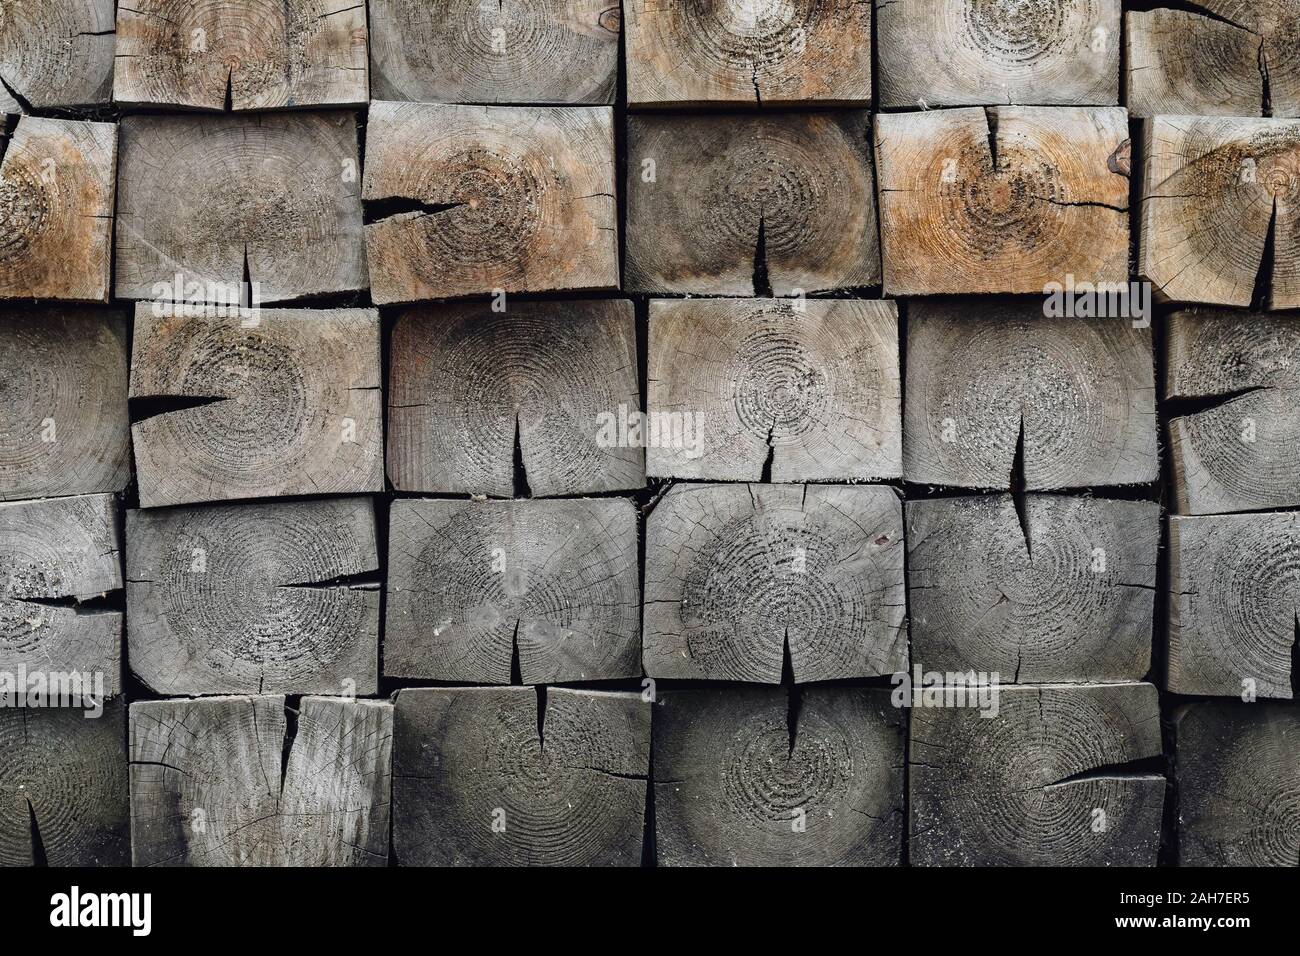 La texture du bois brun de forme carrée. Mur de brique en bois. Mosaïque de bars, la maçonnerie de la tuile Banque D'Images